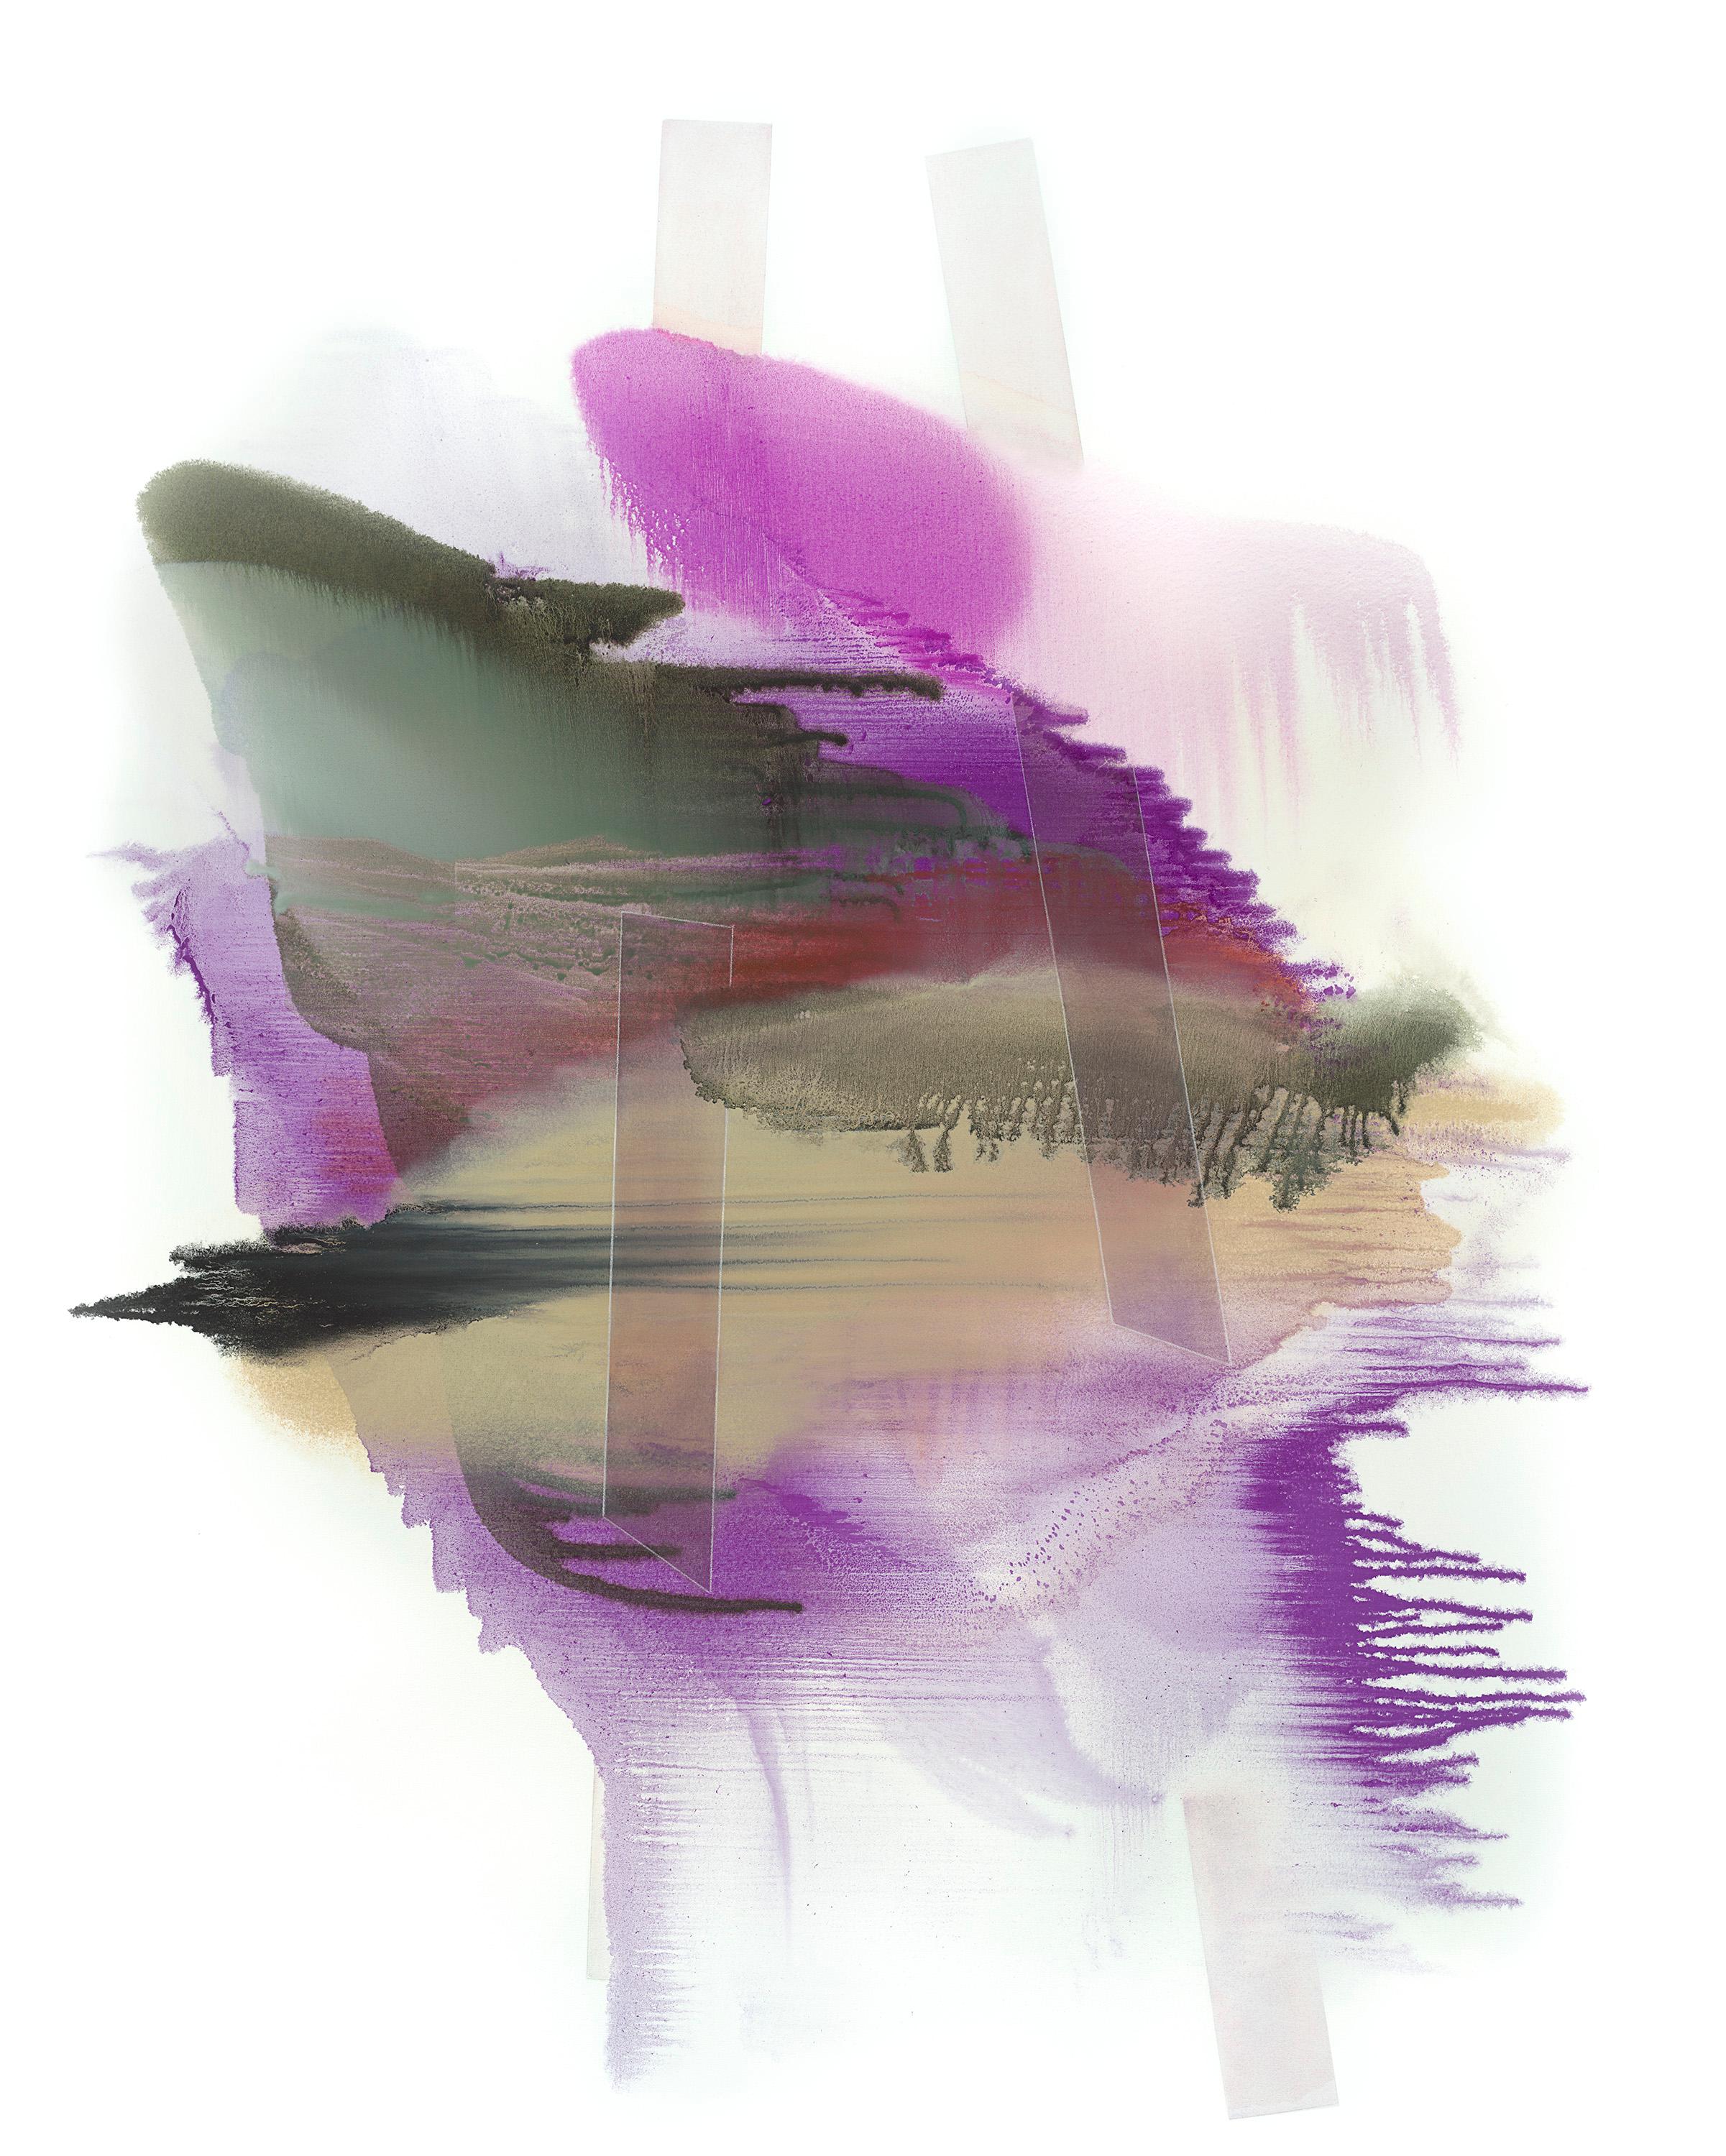 "Antares" ist ein schwungvolles zeitgenössisches abstraktes Ölgemälde von Kuzana Ogg. Die Komposition mit ihren violetten, sandfarbenen, roten und dunkelgrünen Tönen scheint über die Leinwand zu tanzen. In ihren neueren Gemälden verwendet Ogg häufig